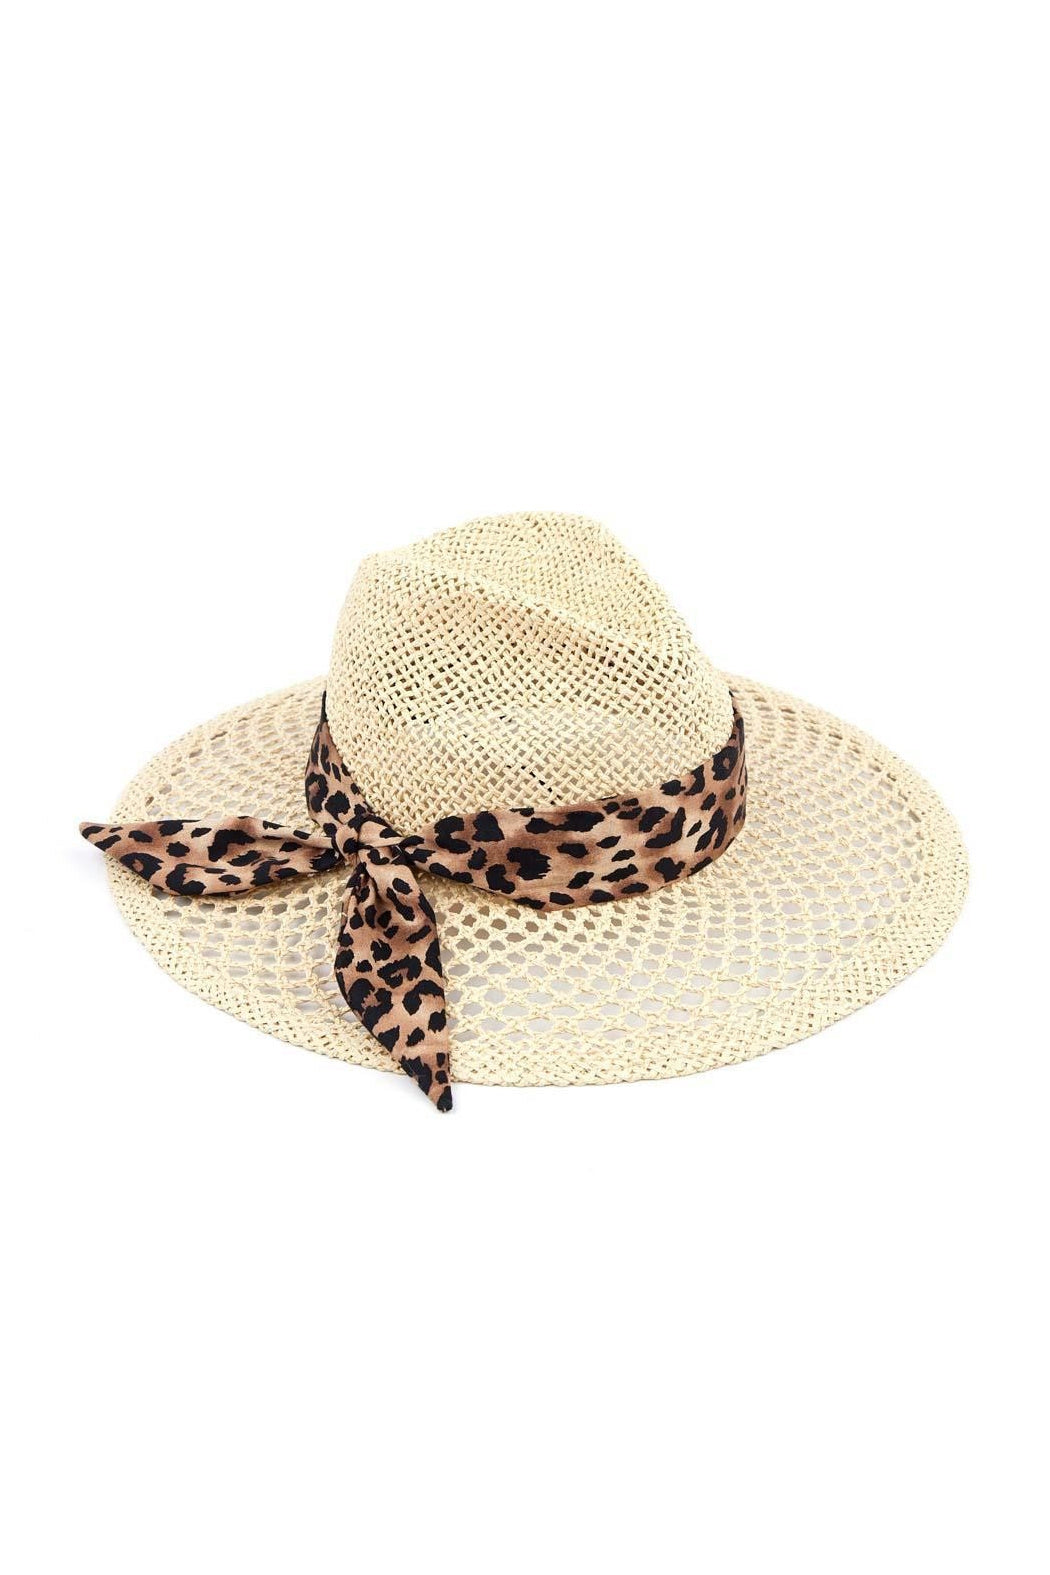 Honeycomb Panama Hat - Embellish Your Life 